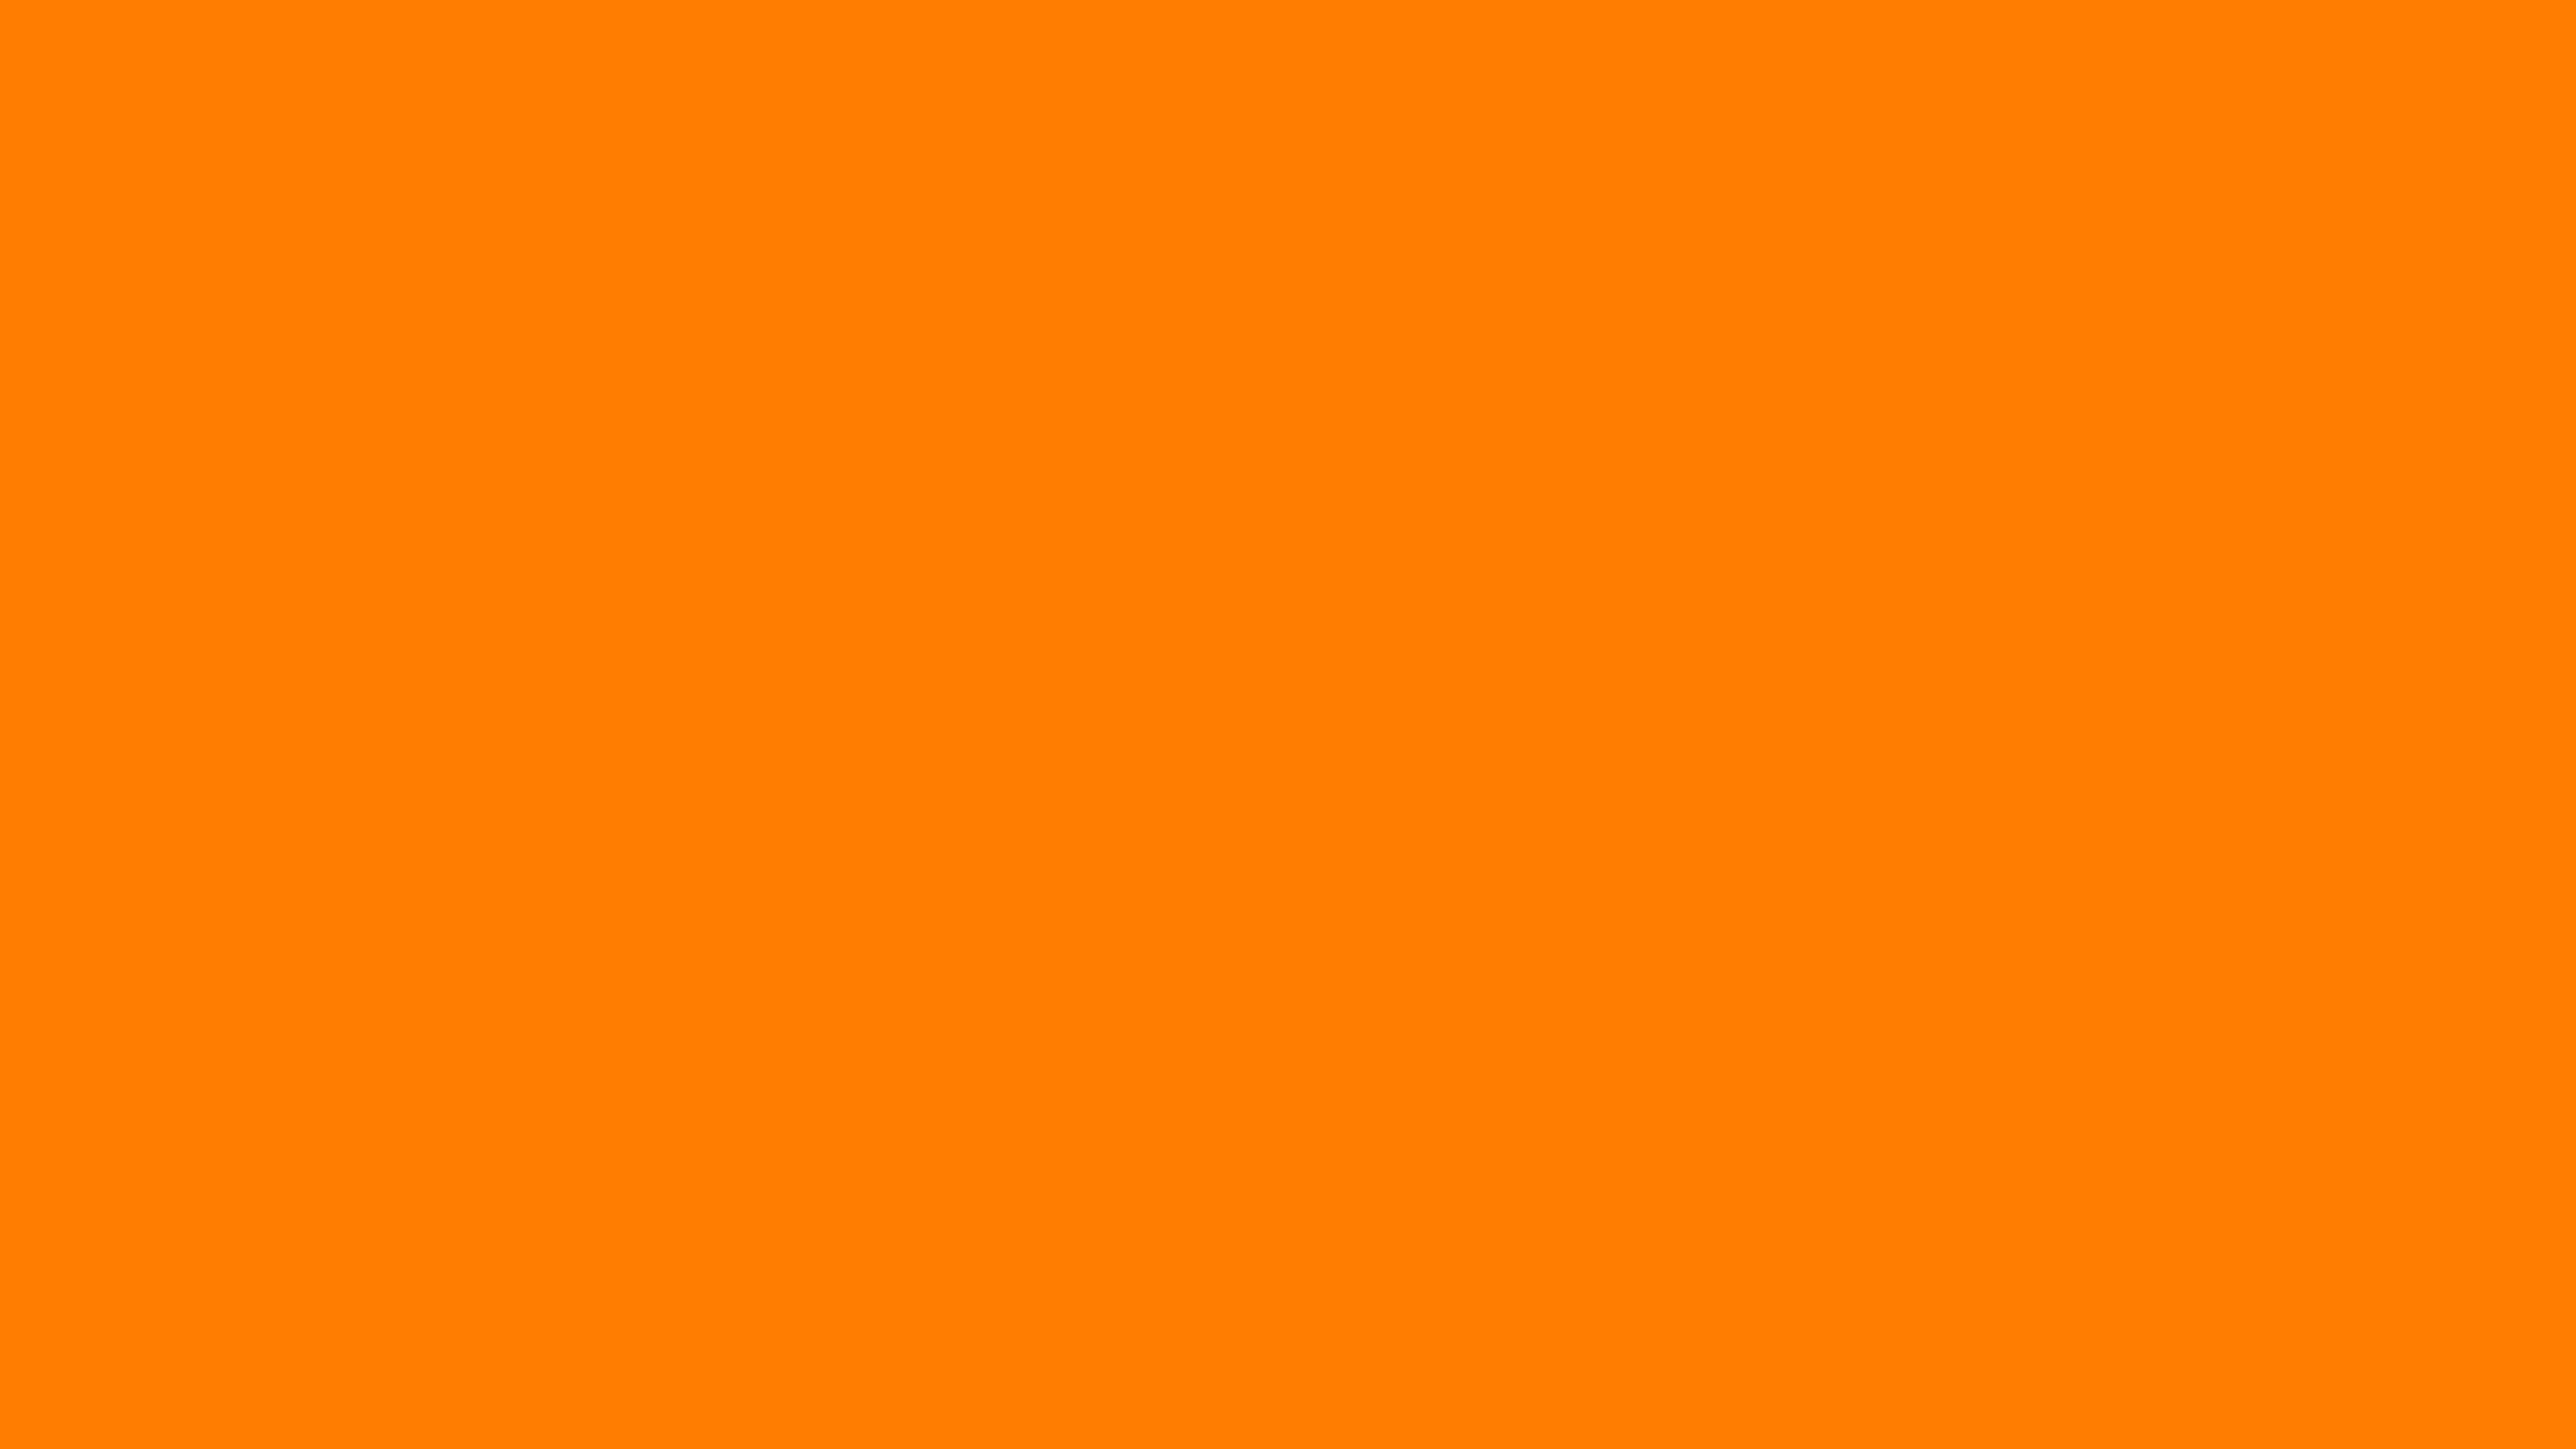 4096x2304 Amber Orange Solid Color Background